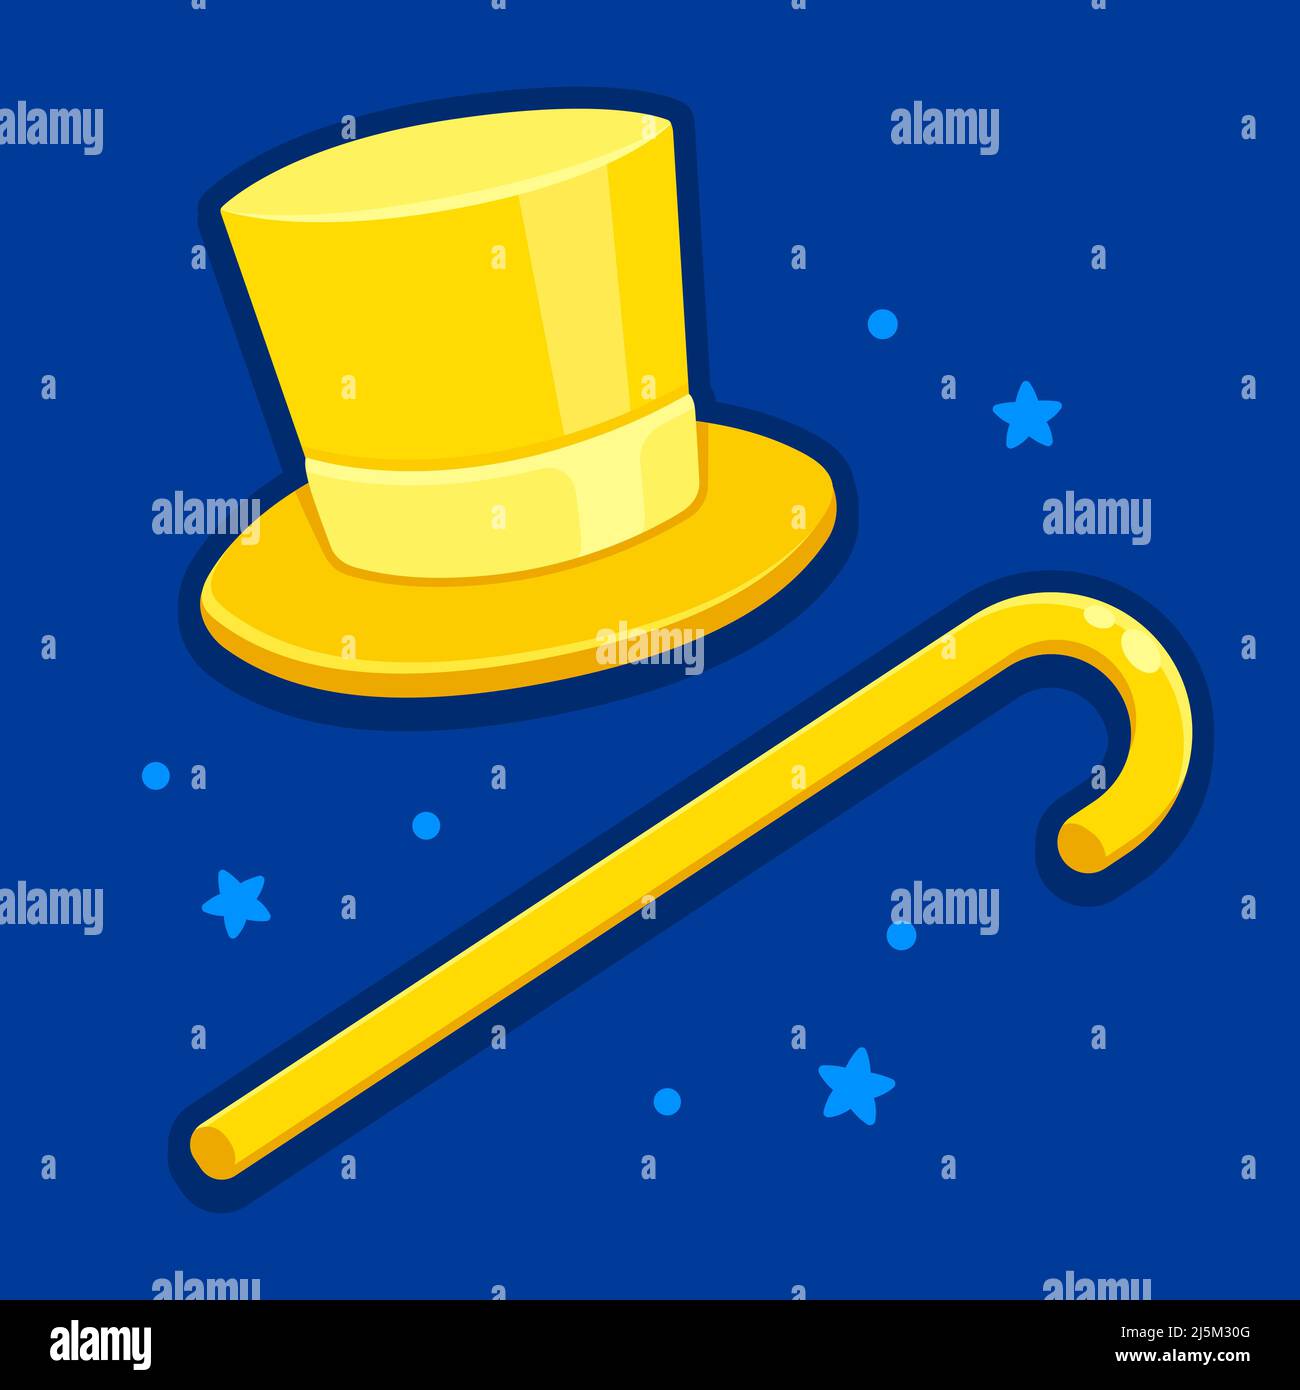 Hat and cane Banque d'images vectorielles - Alamy